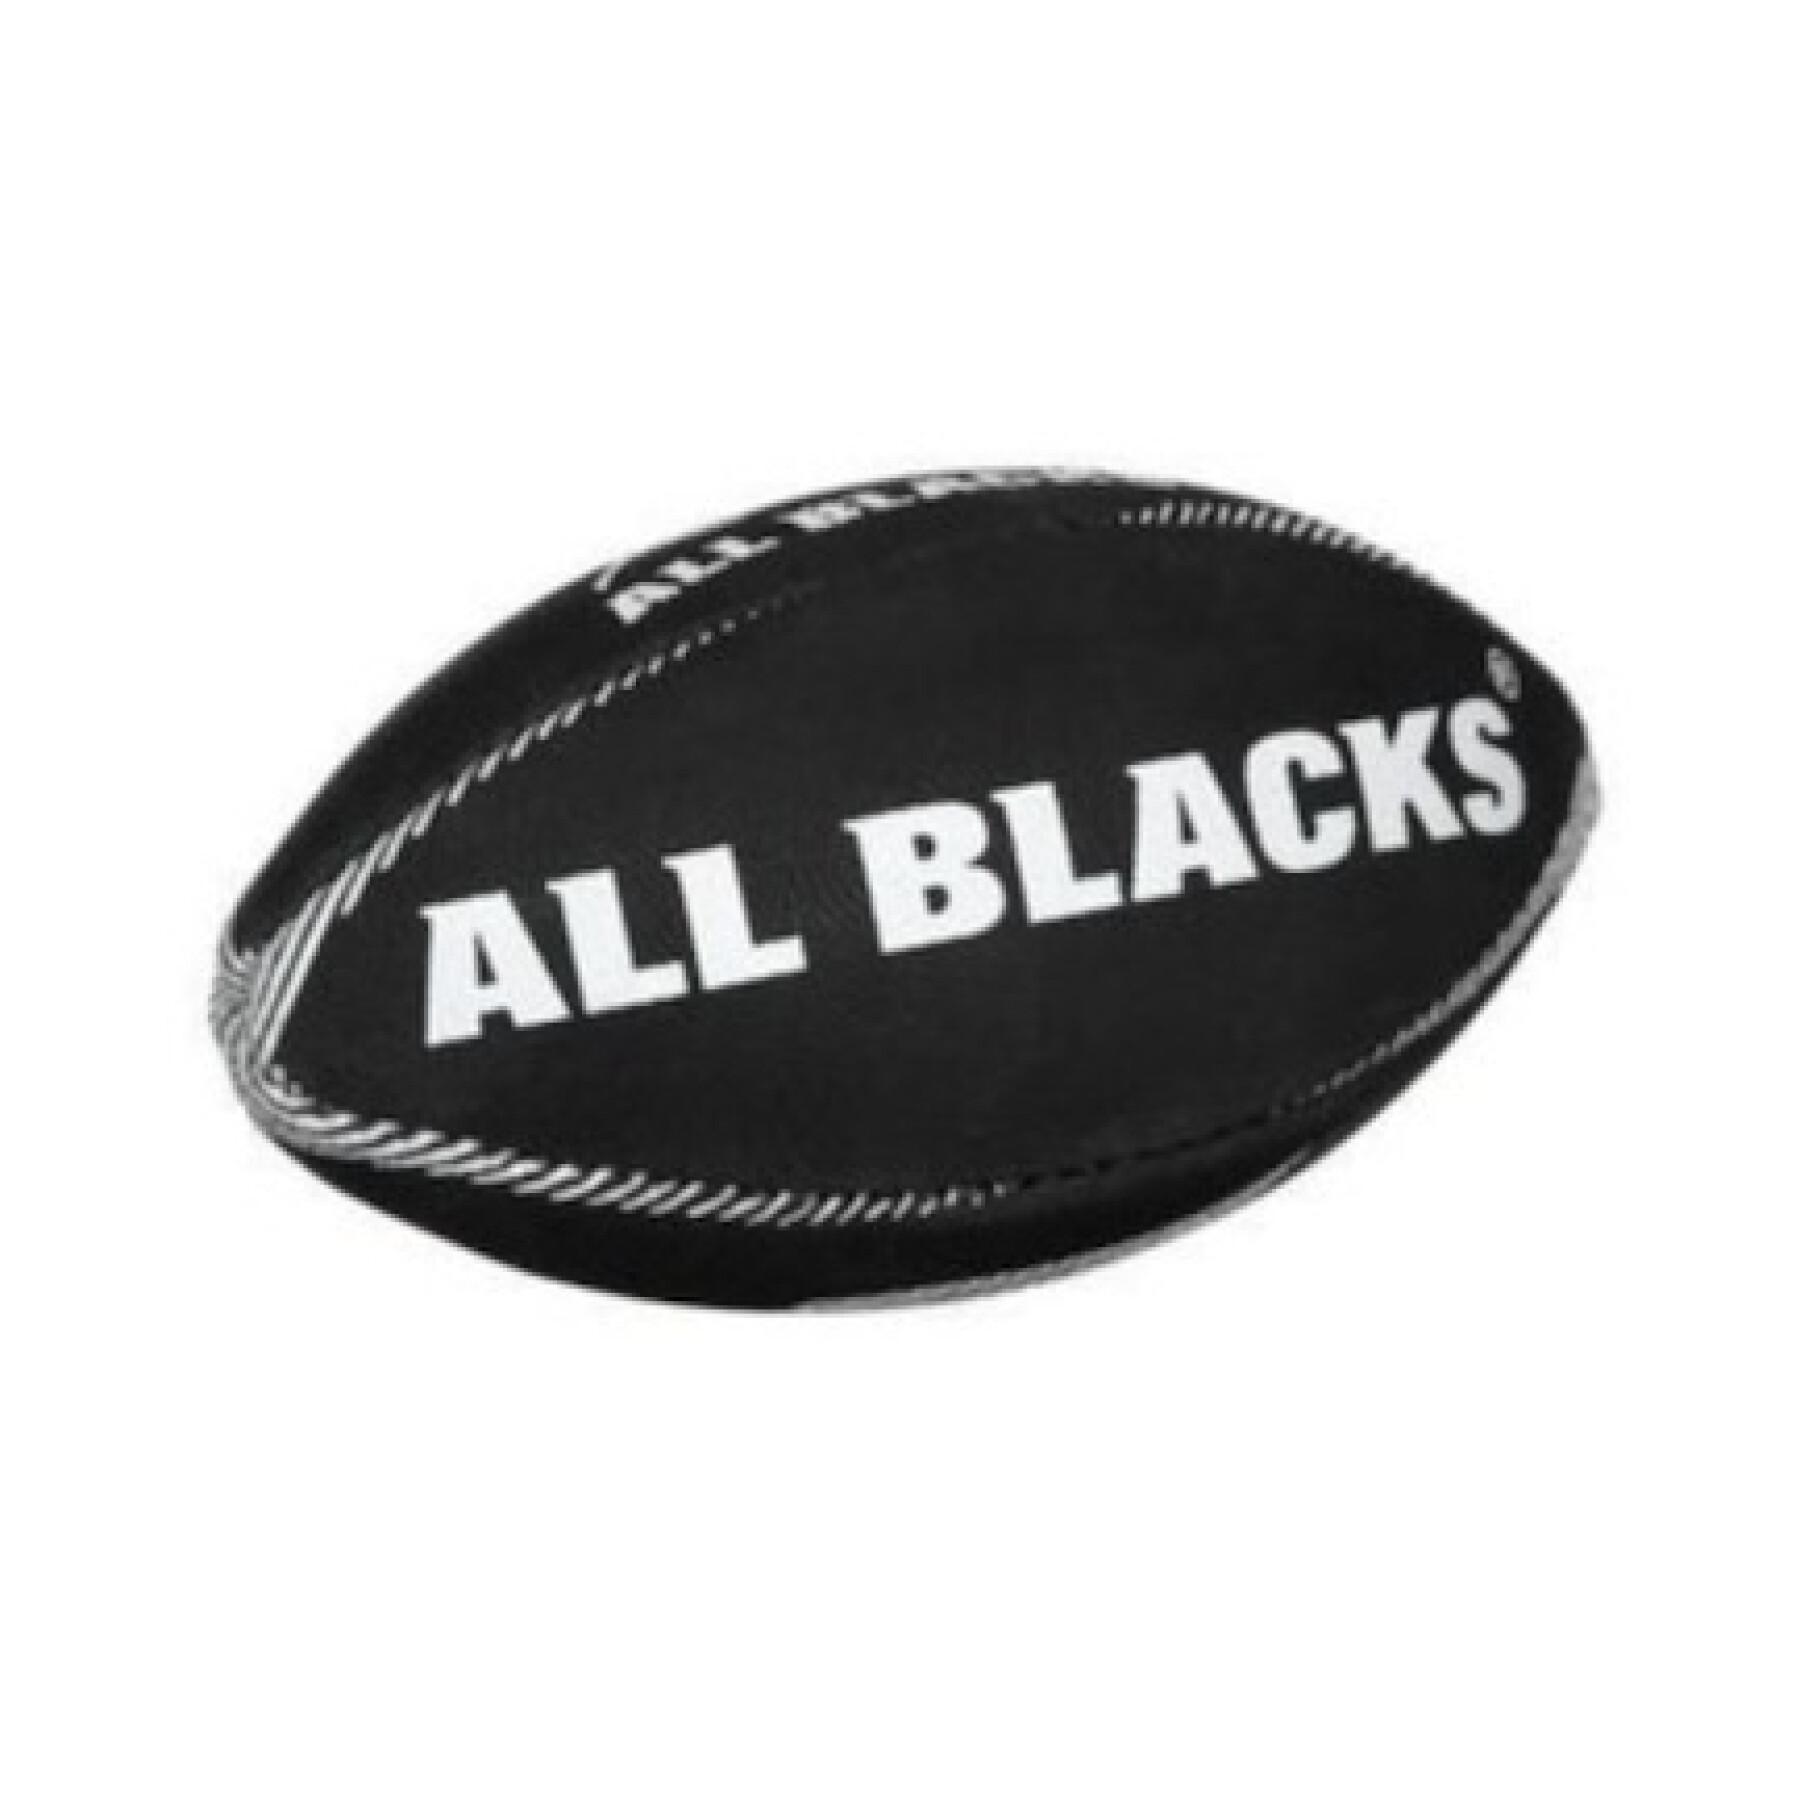 Balón de rugby Gilbert All Blacks (talla 3)